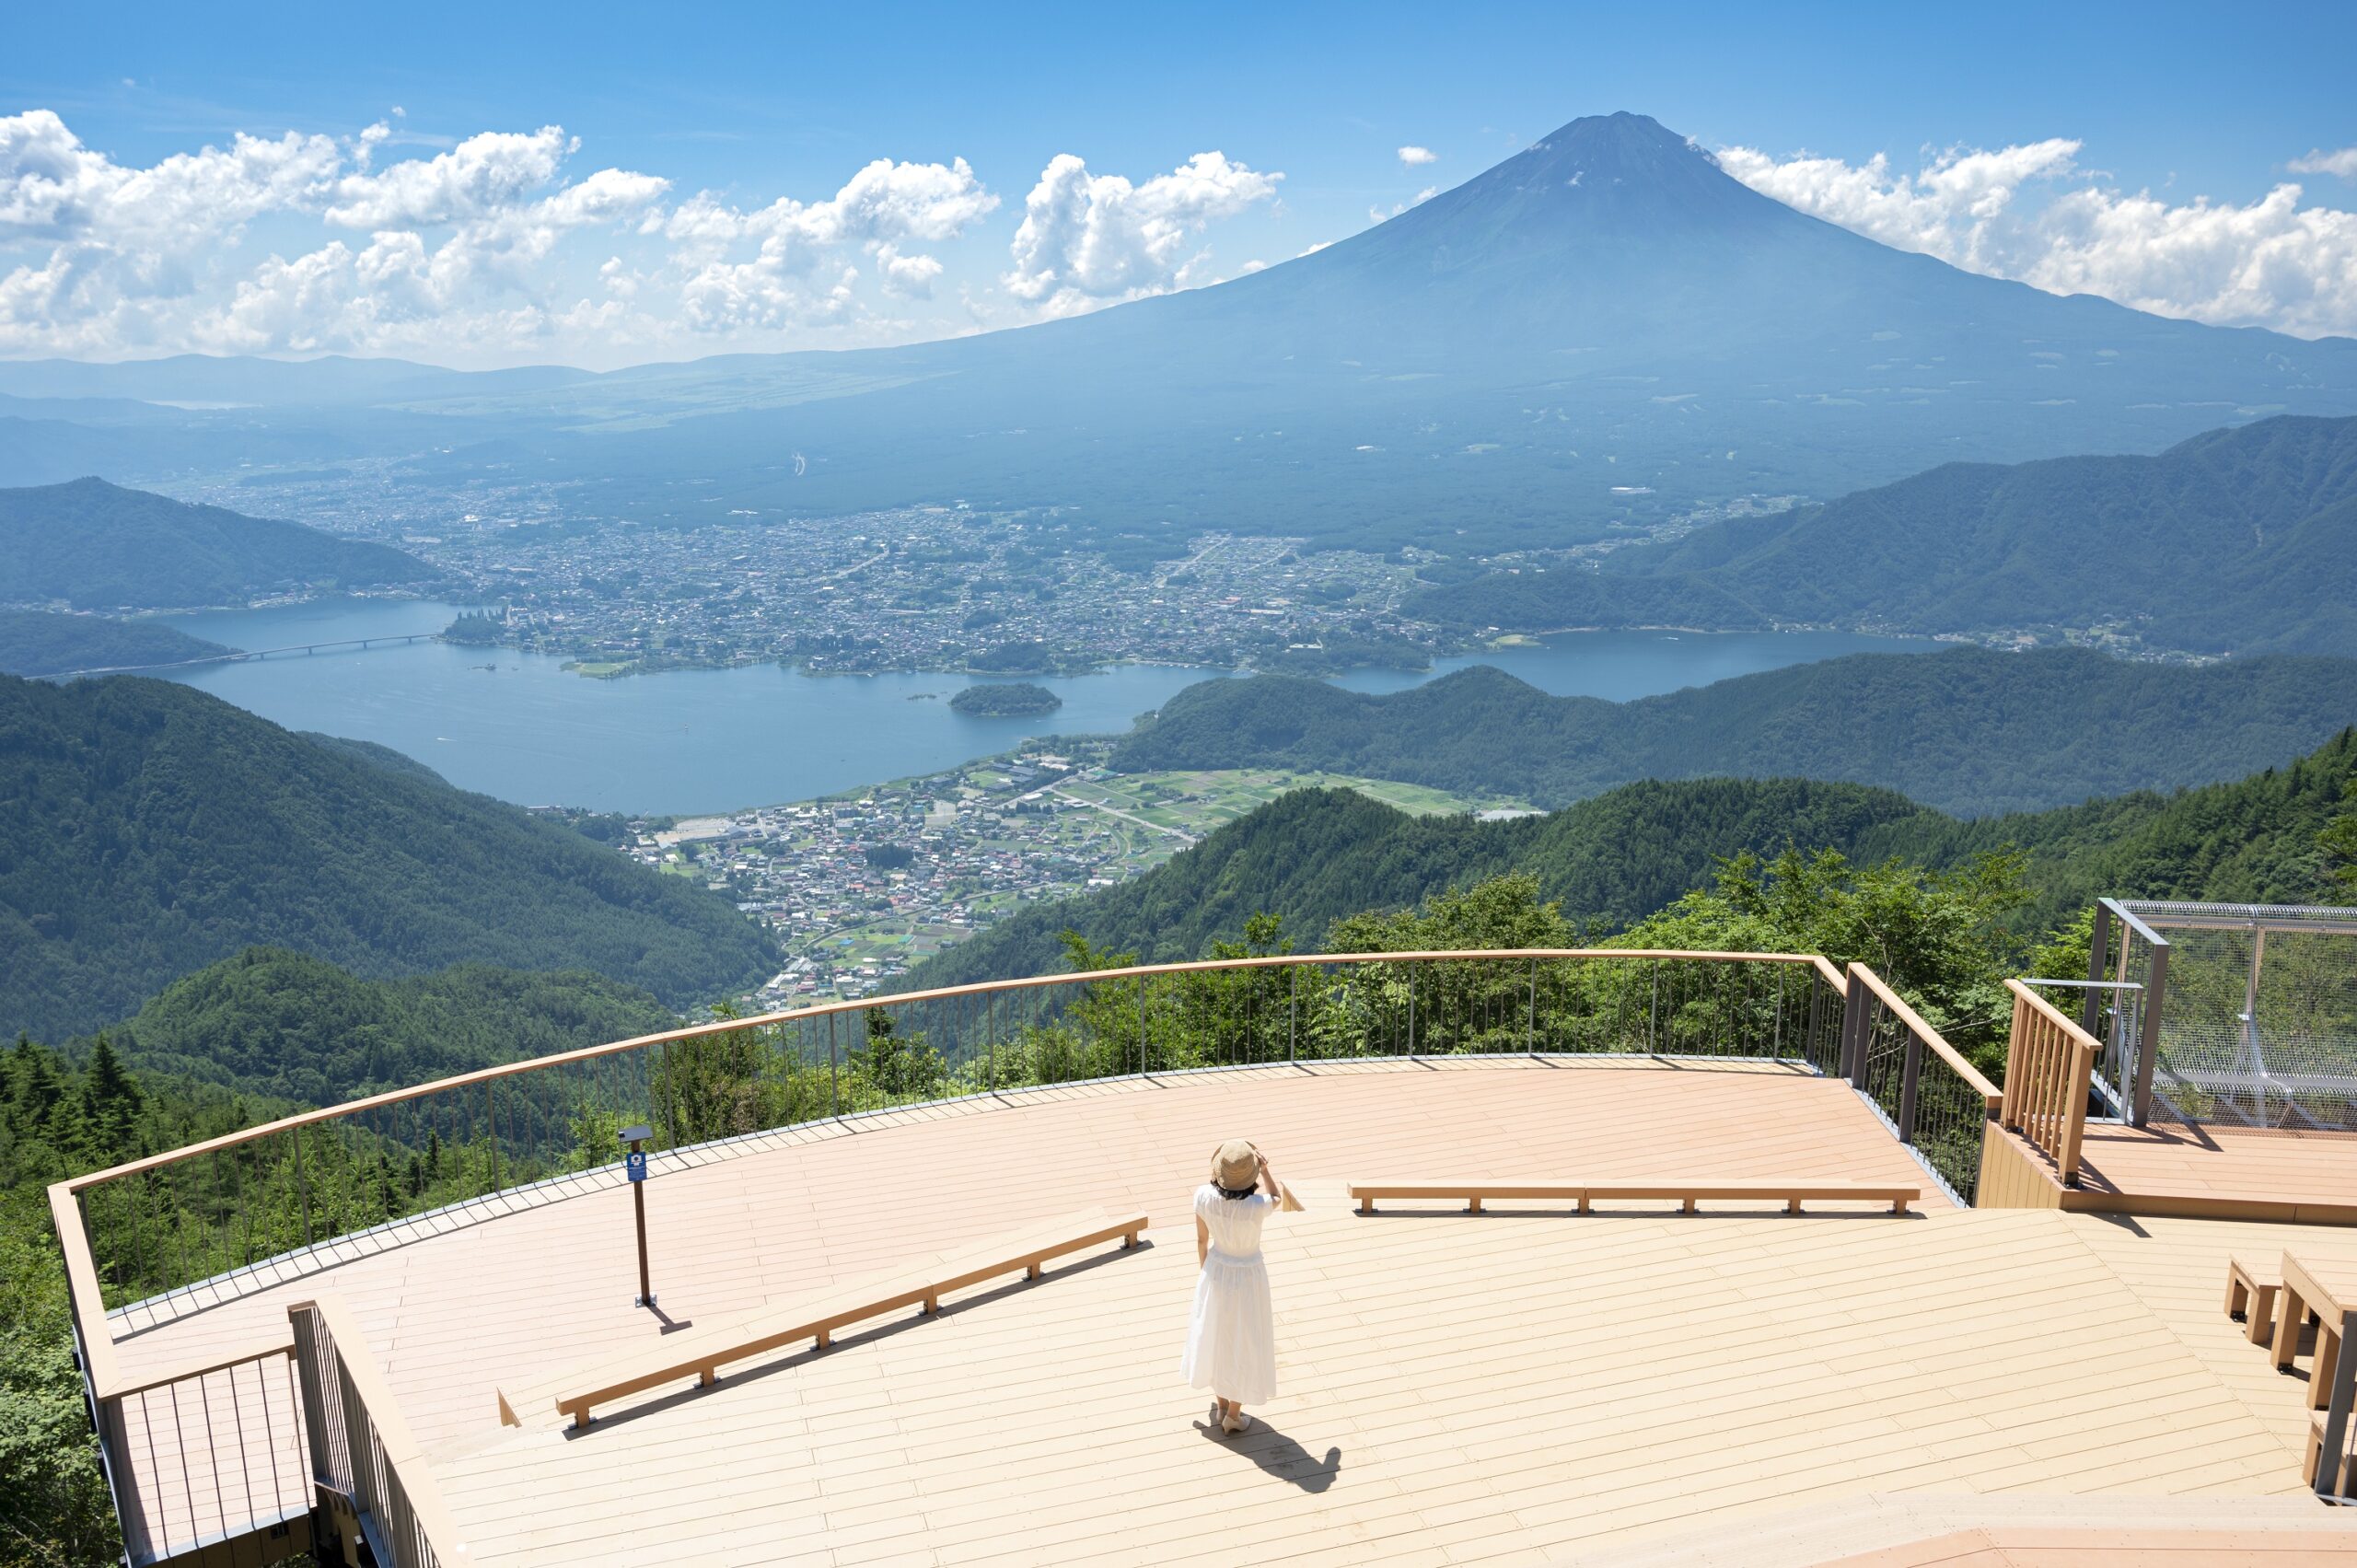 ～新道峠からの富士山眺望スポット～FUJIYAMAツインテラス